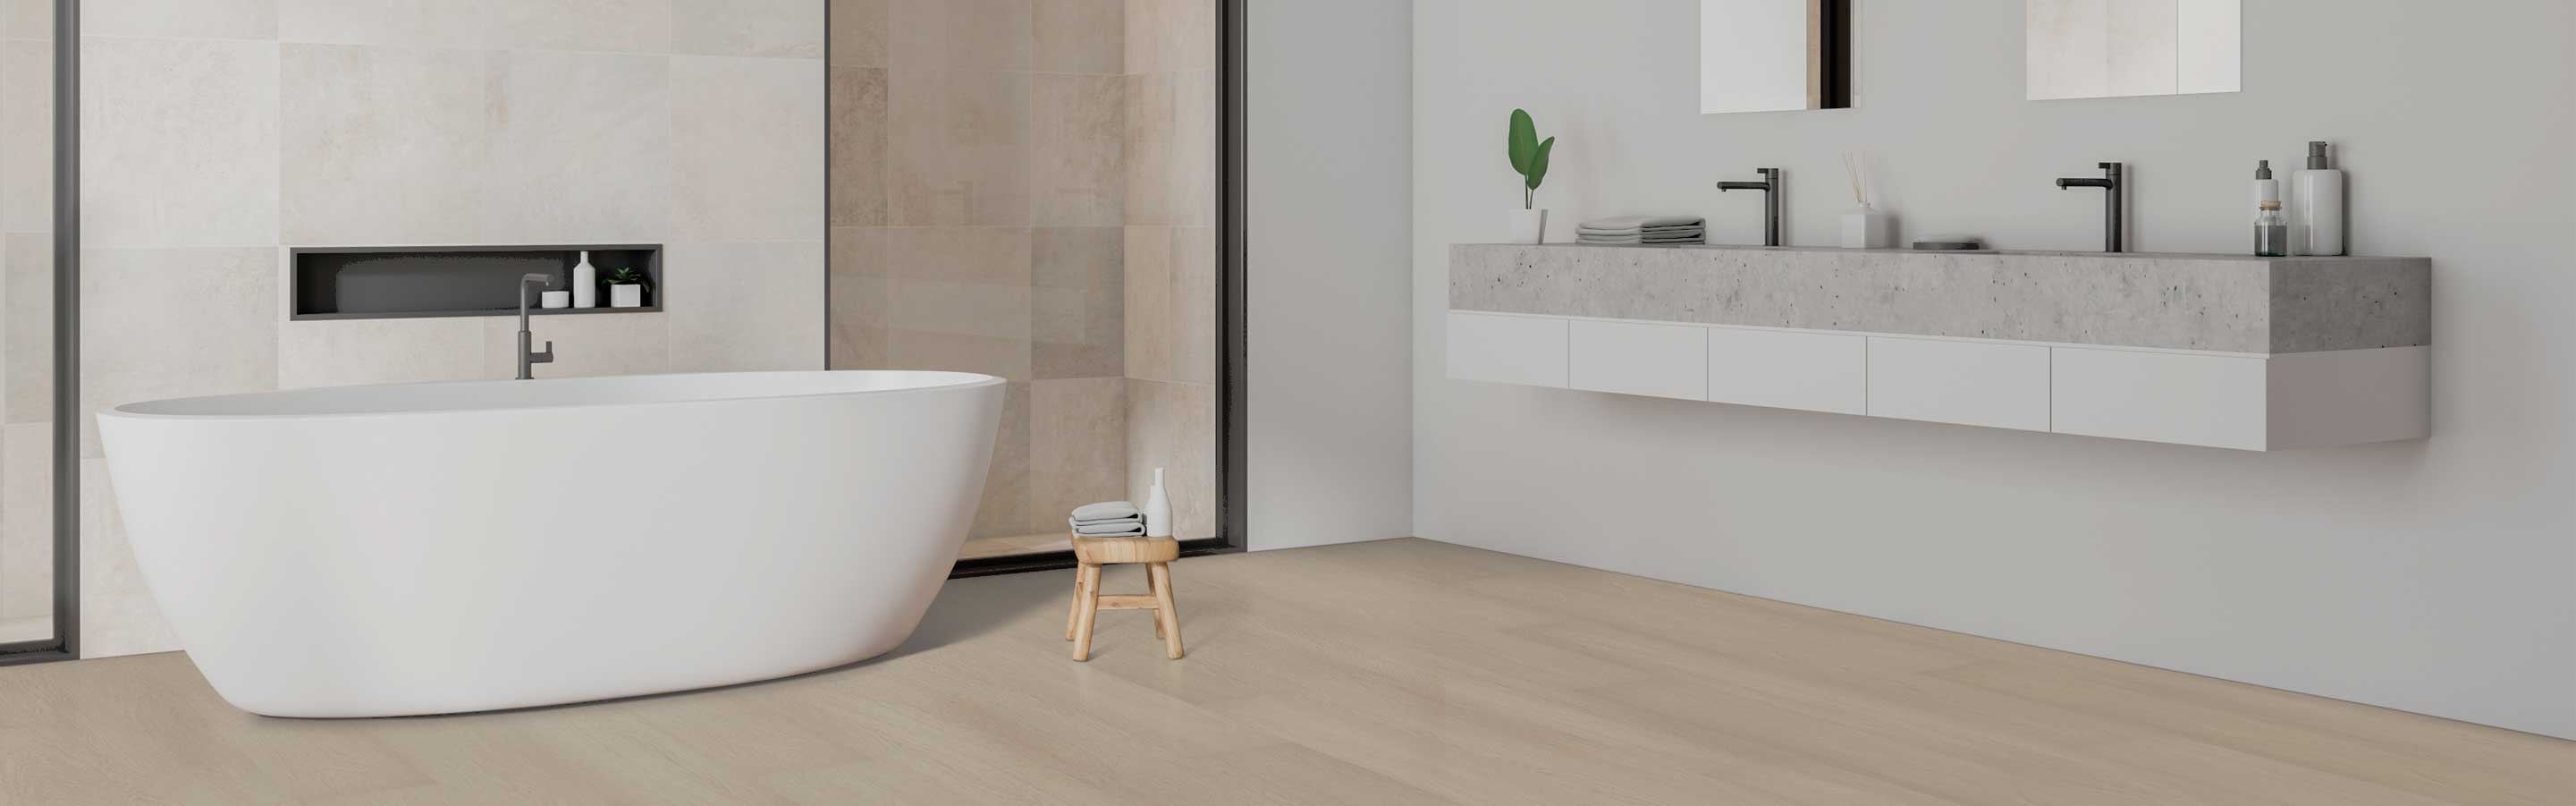 waterproof wood look light wood flooring in bathroom with soaker tub with ambient lighting